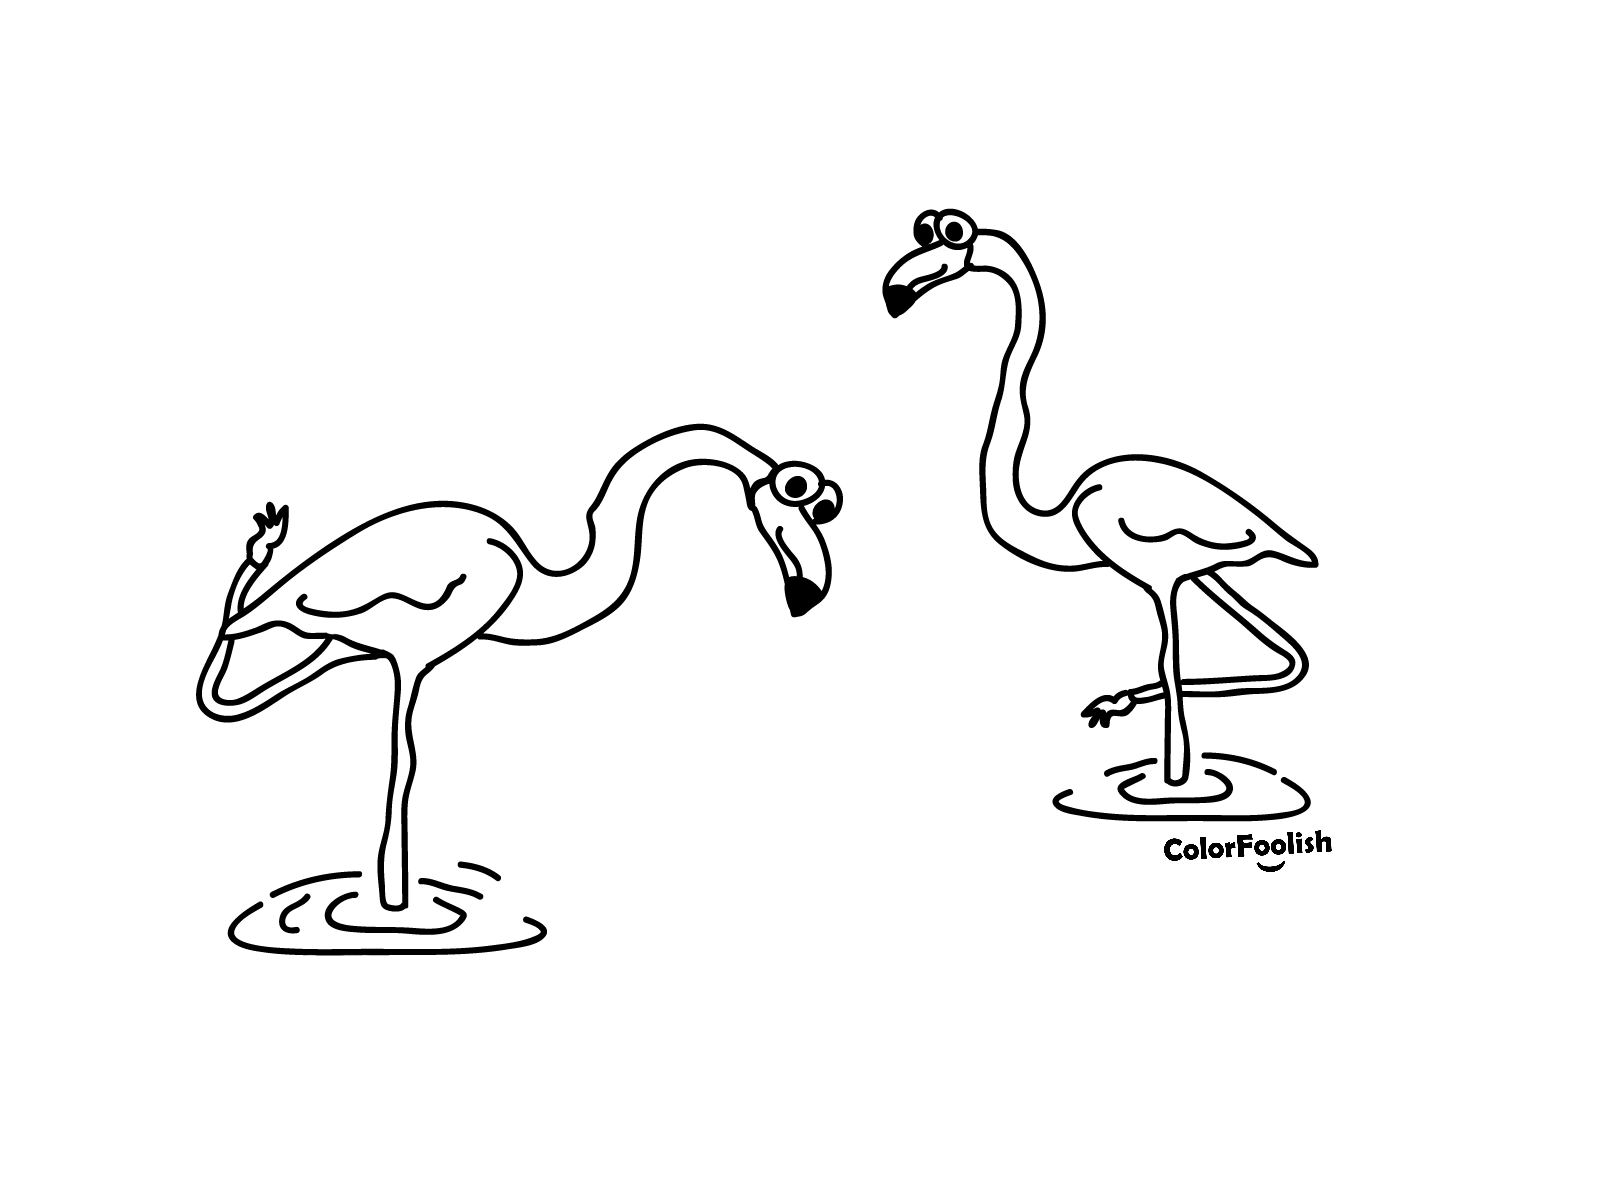 Pahina ng pangkulay ng tren ng flamingos